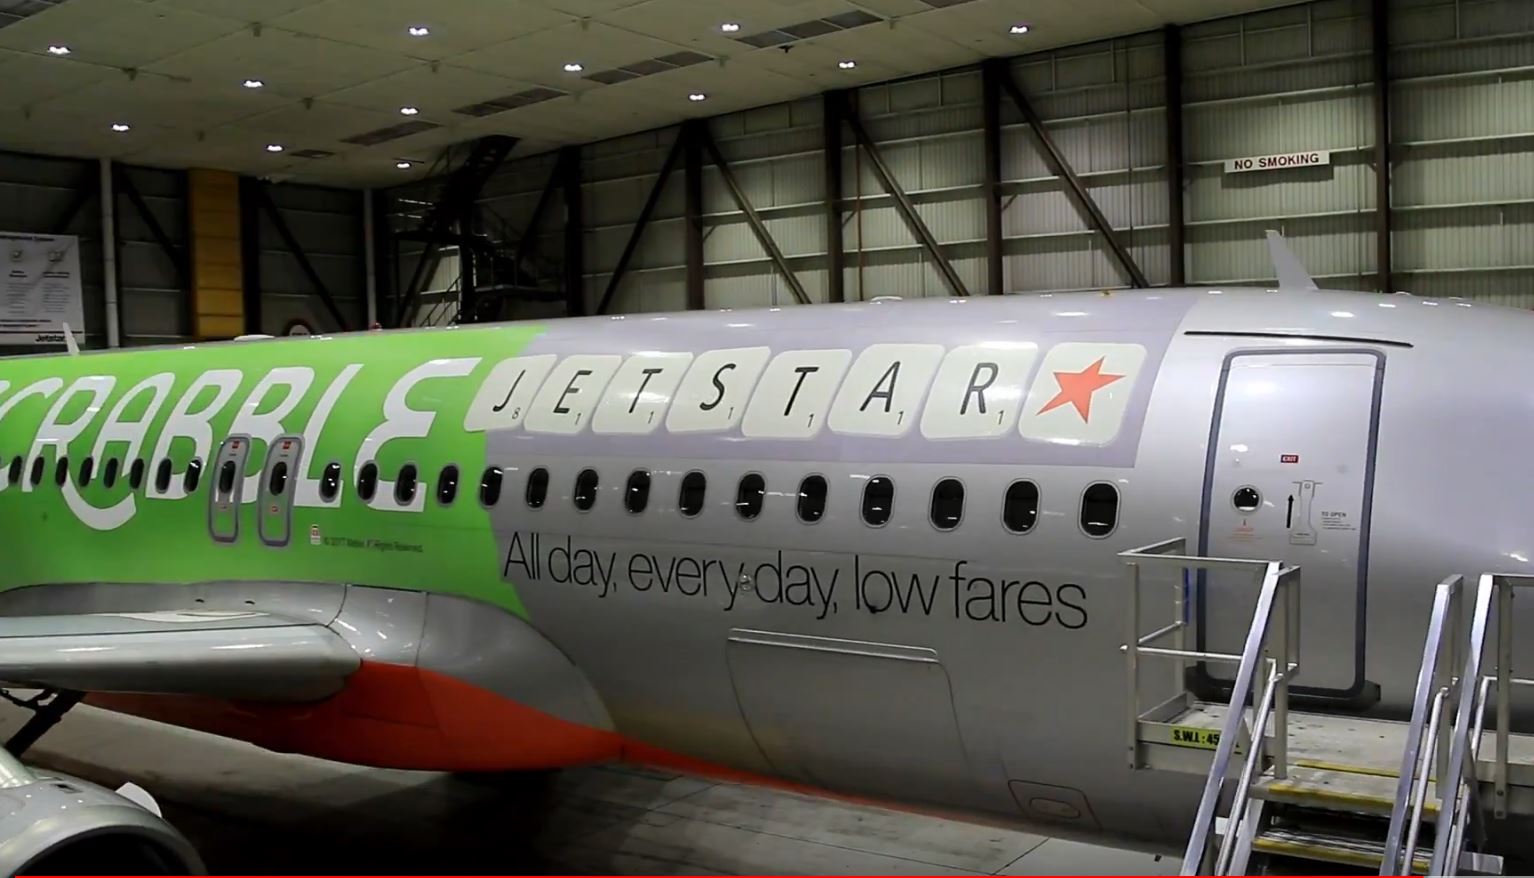 Jetstar “Aussie Scrabble” livery